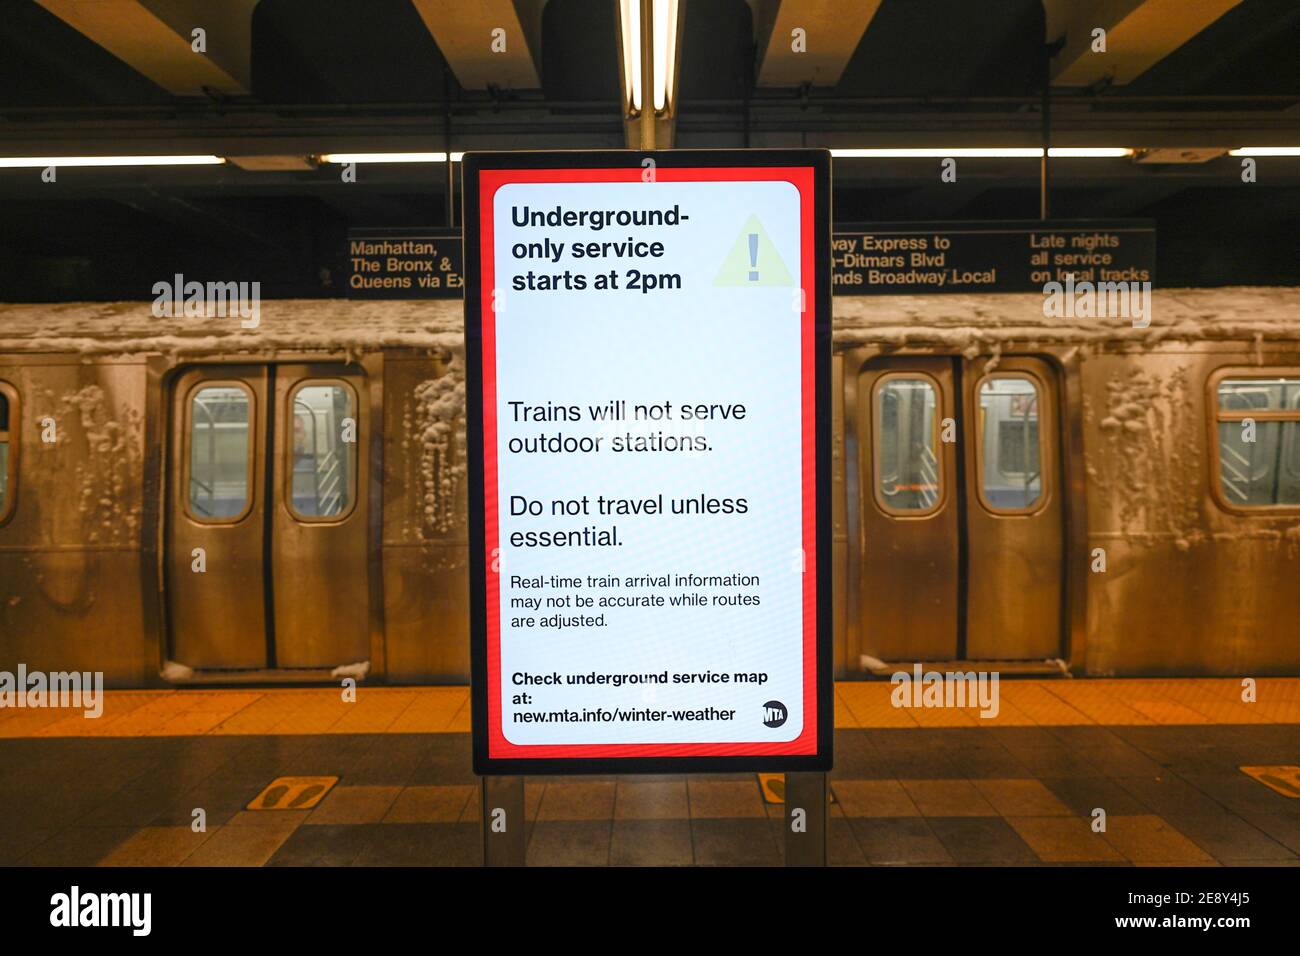 Brooklyn, New York, États-Unis. 1 février 2021 un train couvert de neige non en service se met en service dans la station de métro de la 36e rue, car le métro de la ville de New York interrompt le service au-dessus du sol en raison d'une tempête hivernale majeure Banque D'Images